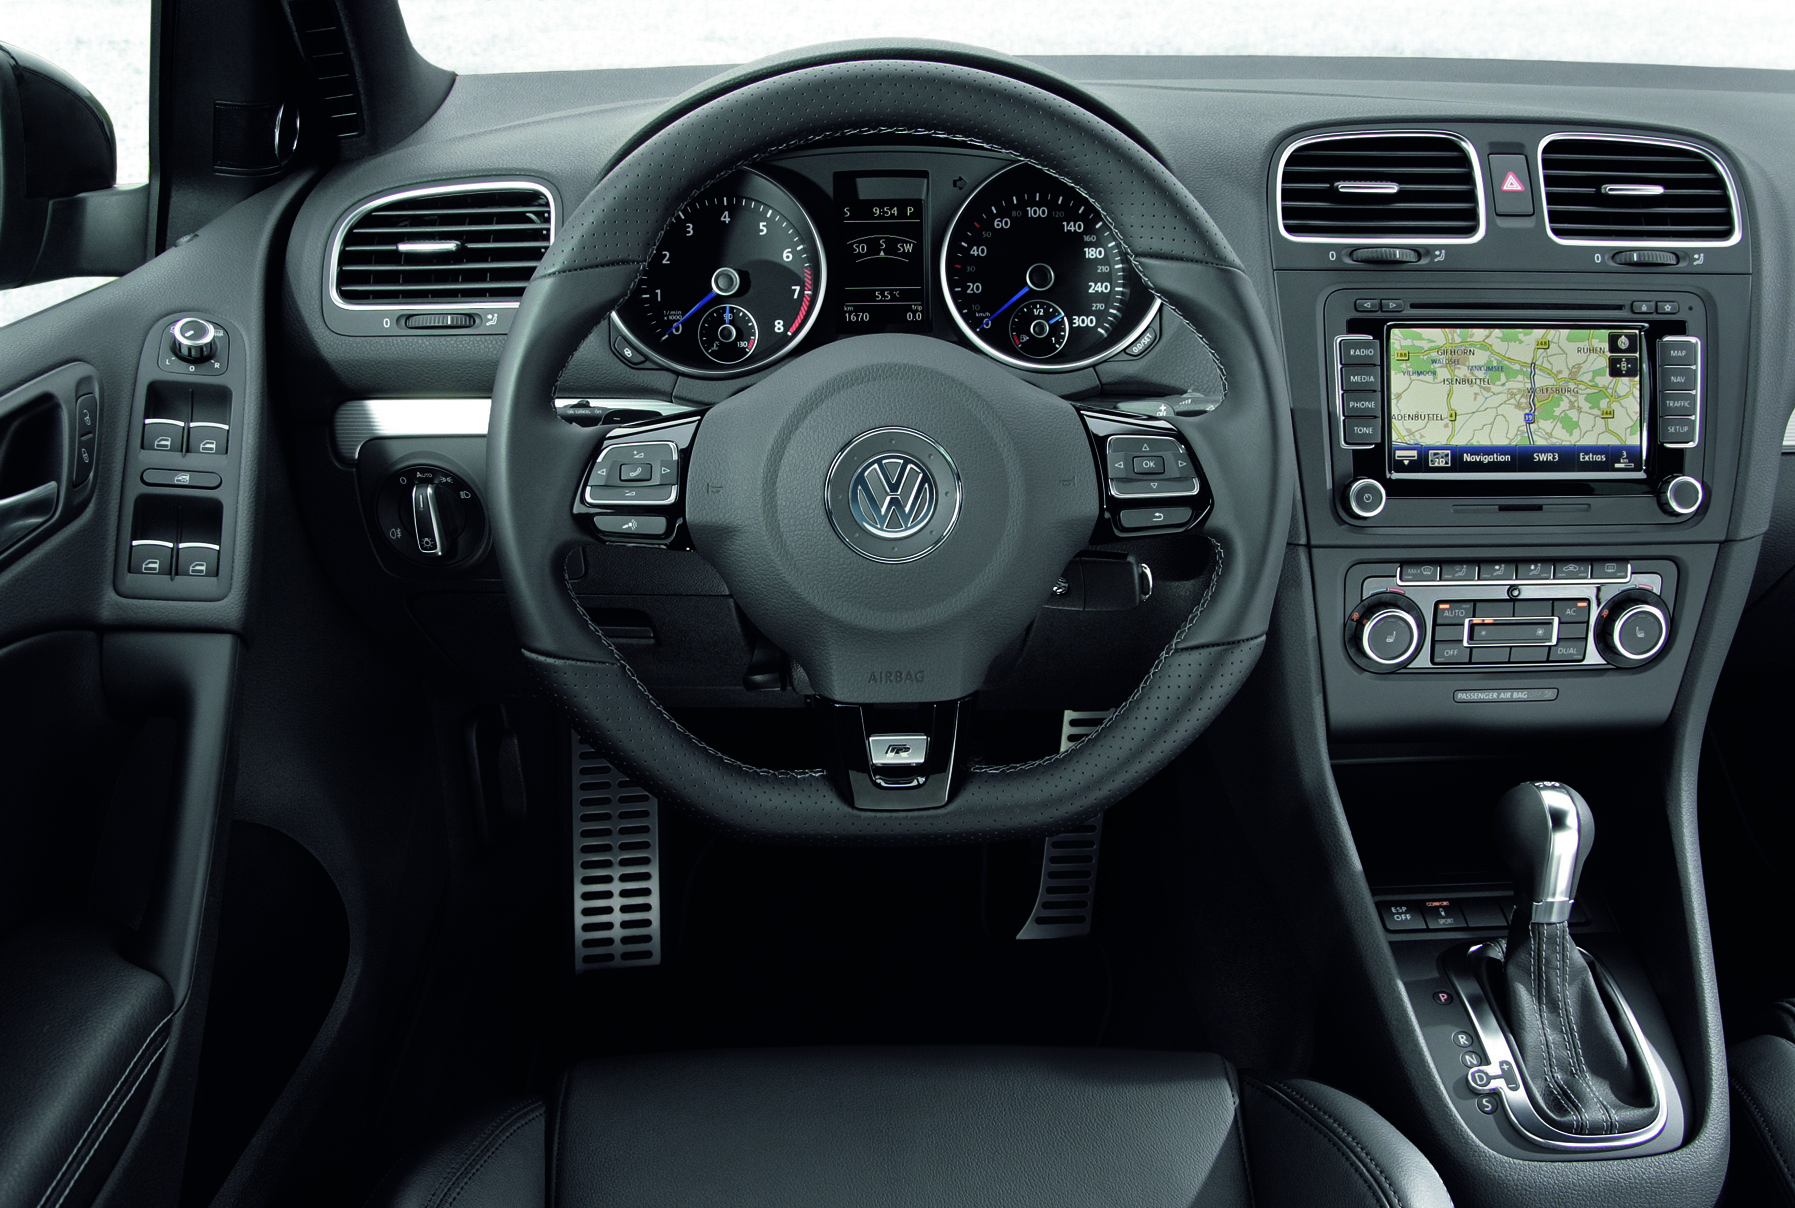 VW Golf R R32 Top Gear Award Hot Hatch